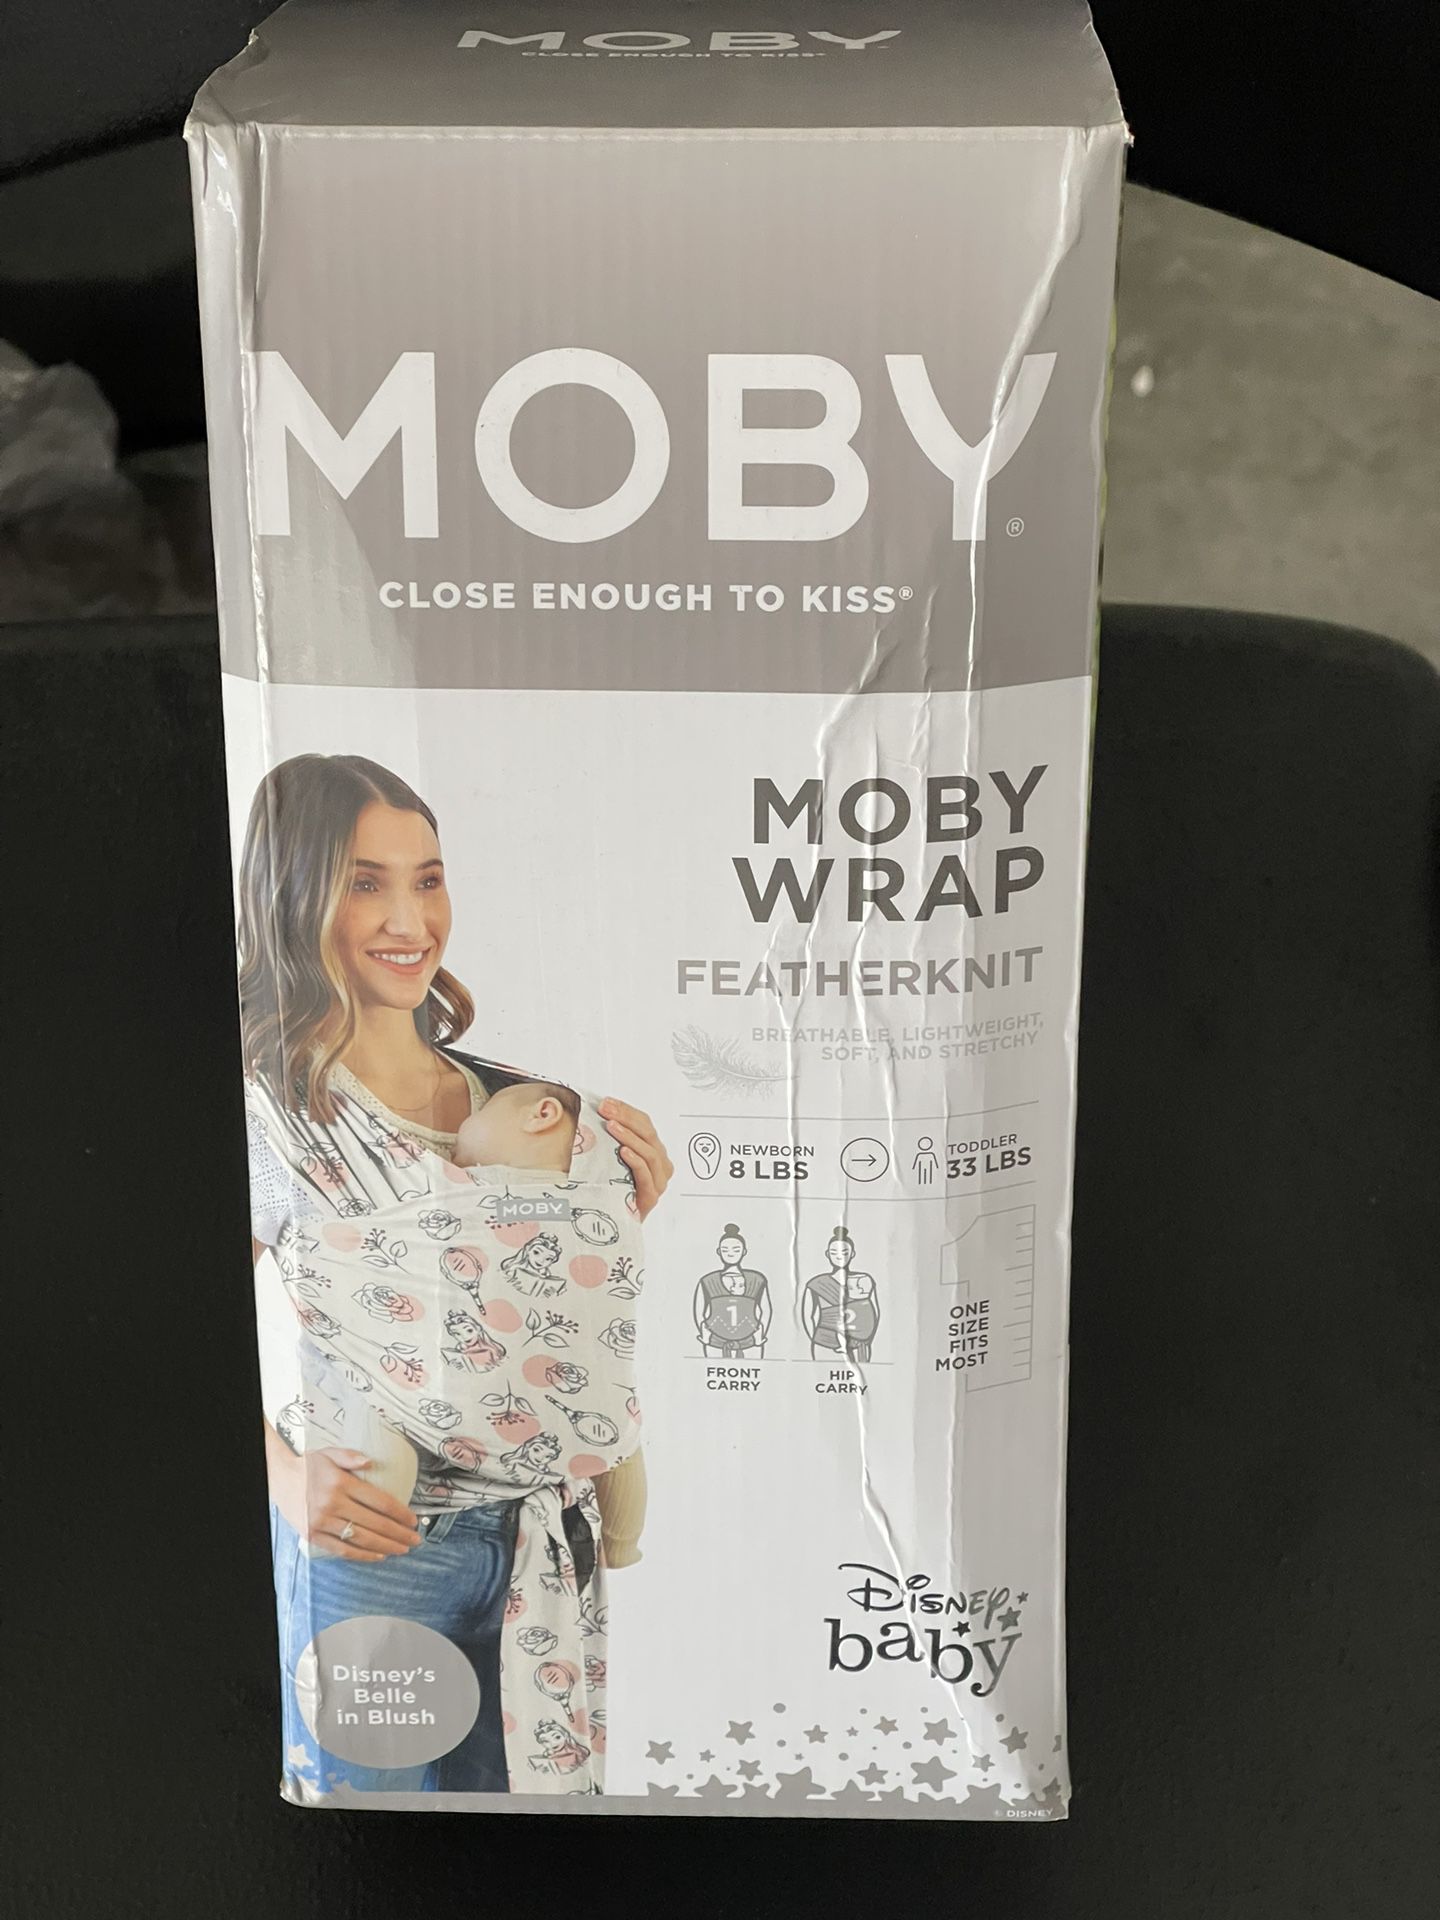 Moby Featherknit Baby Wrap - Disney's Belle in Blush